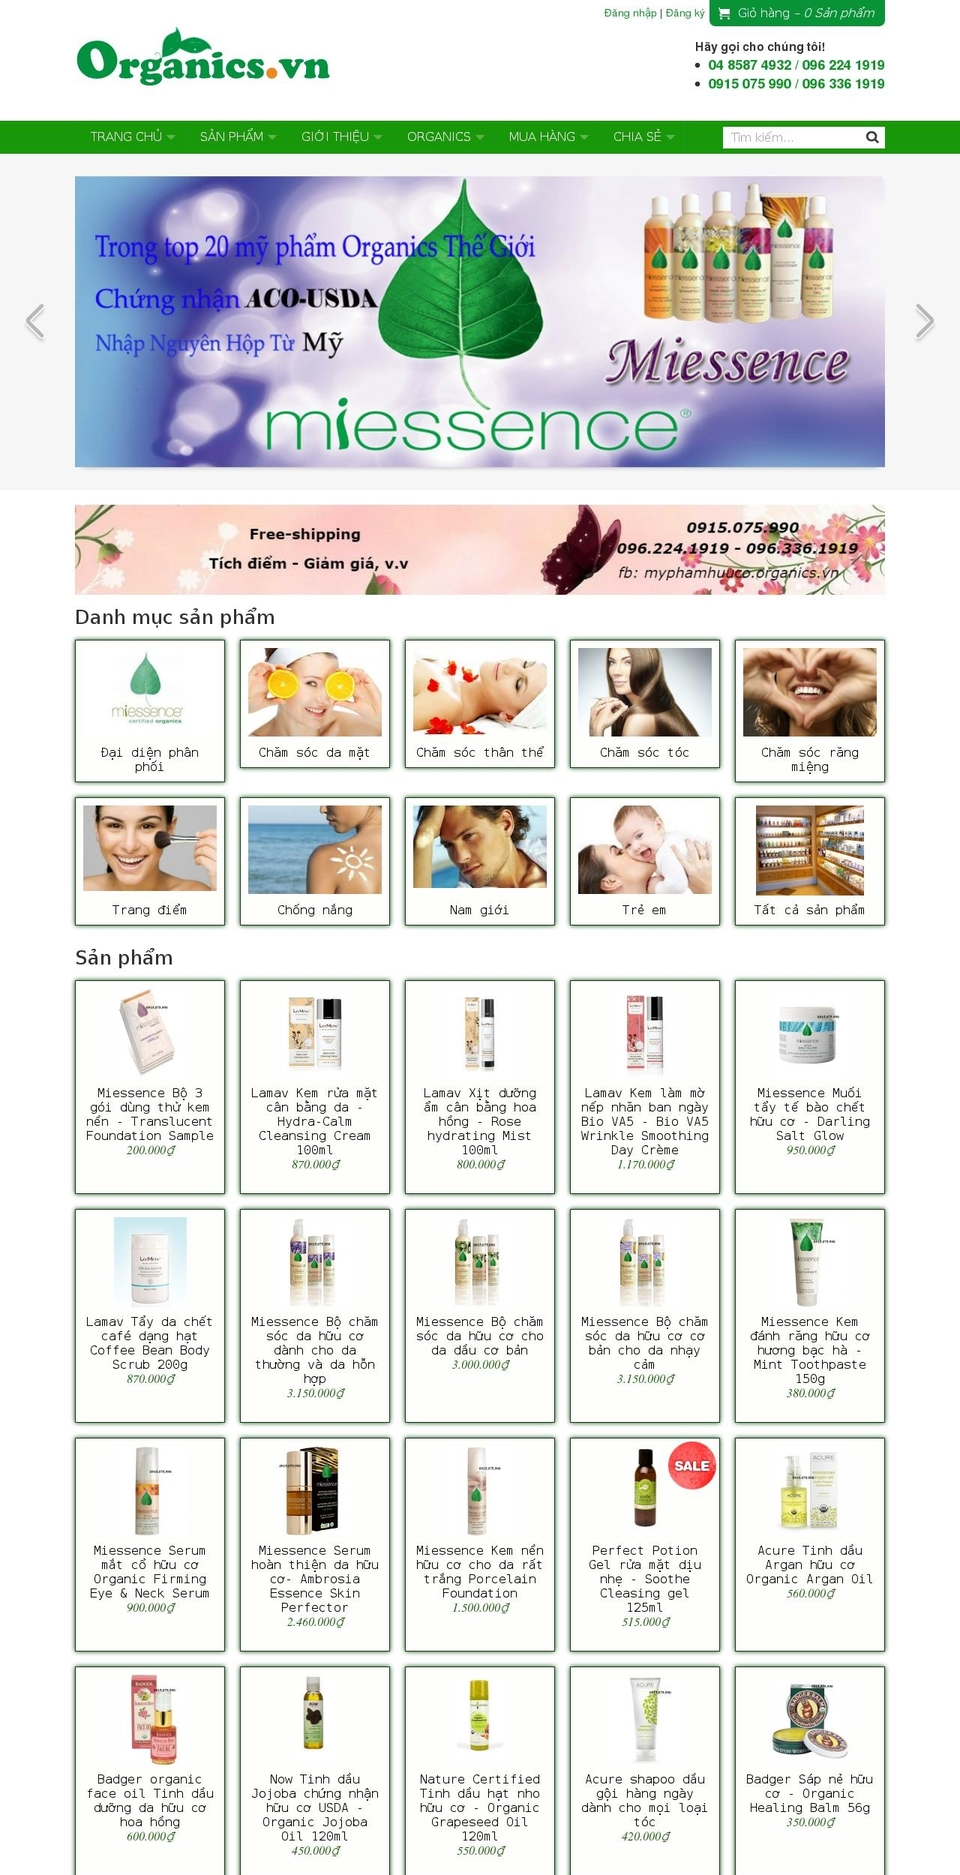 organics.vn shopify website screenshot